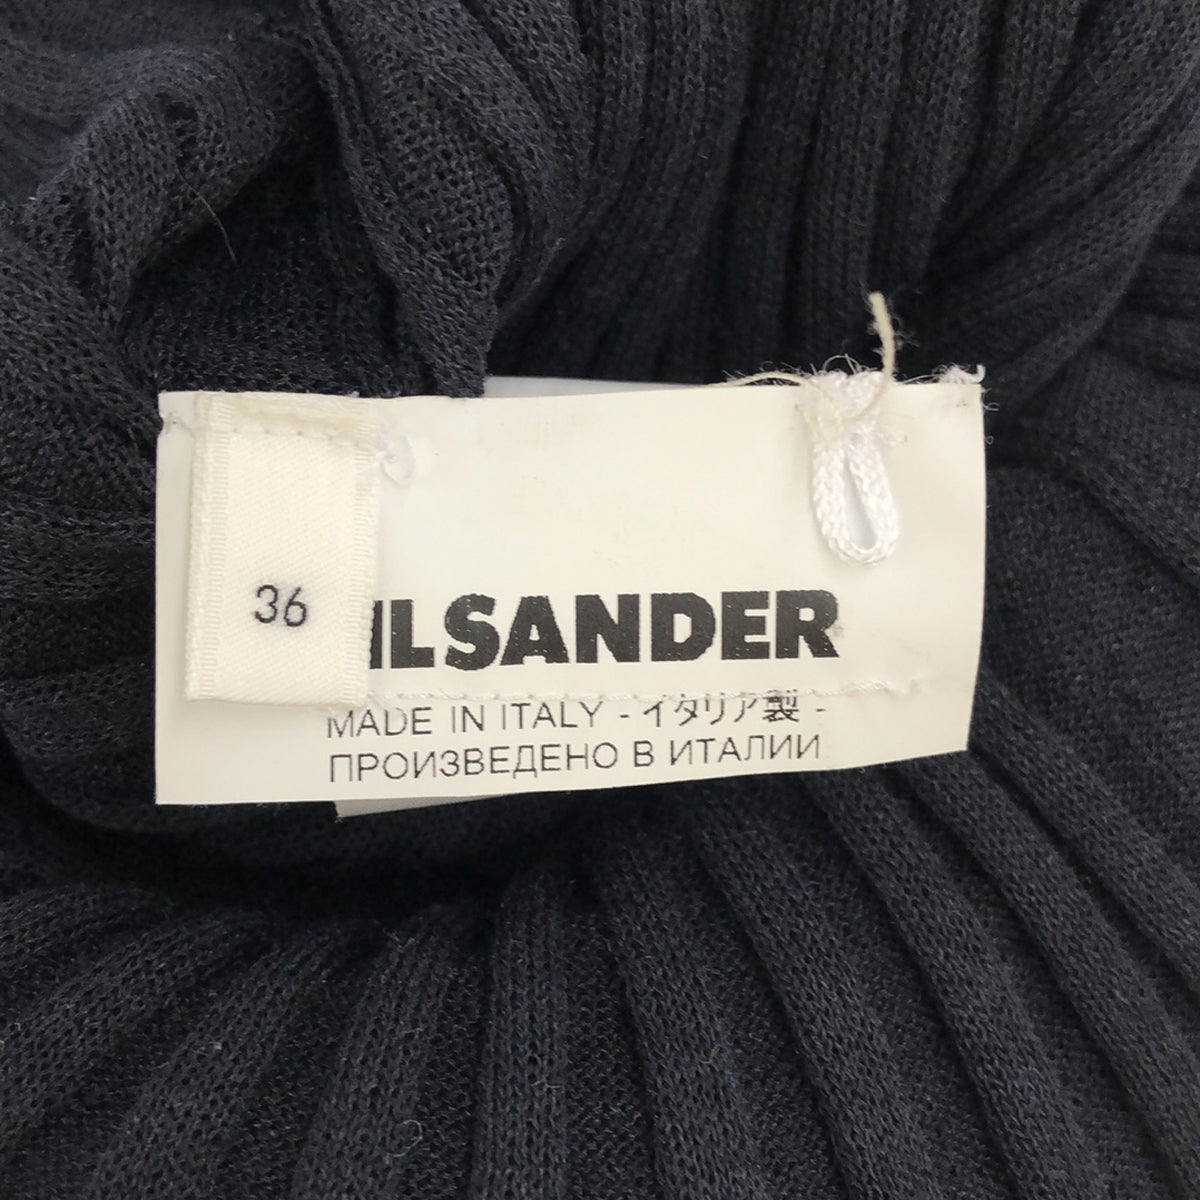 JIL SANDER / ジルサンダー | リネン混 変形 リブニット ロングドレス ワンピース | 36 | ネイビー | レディース